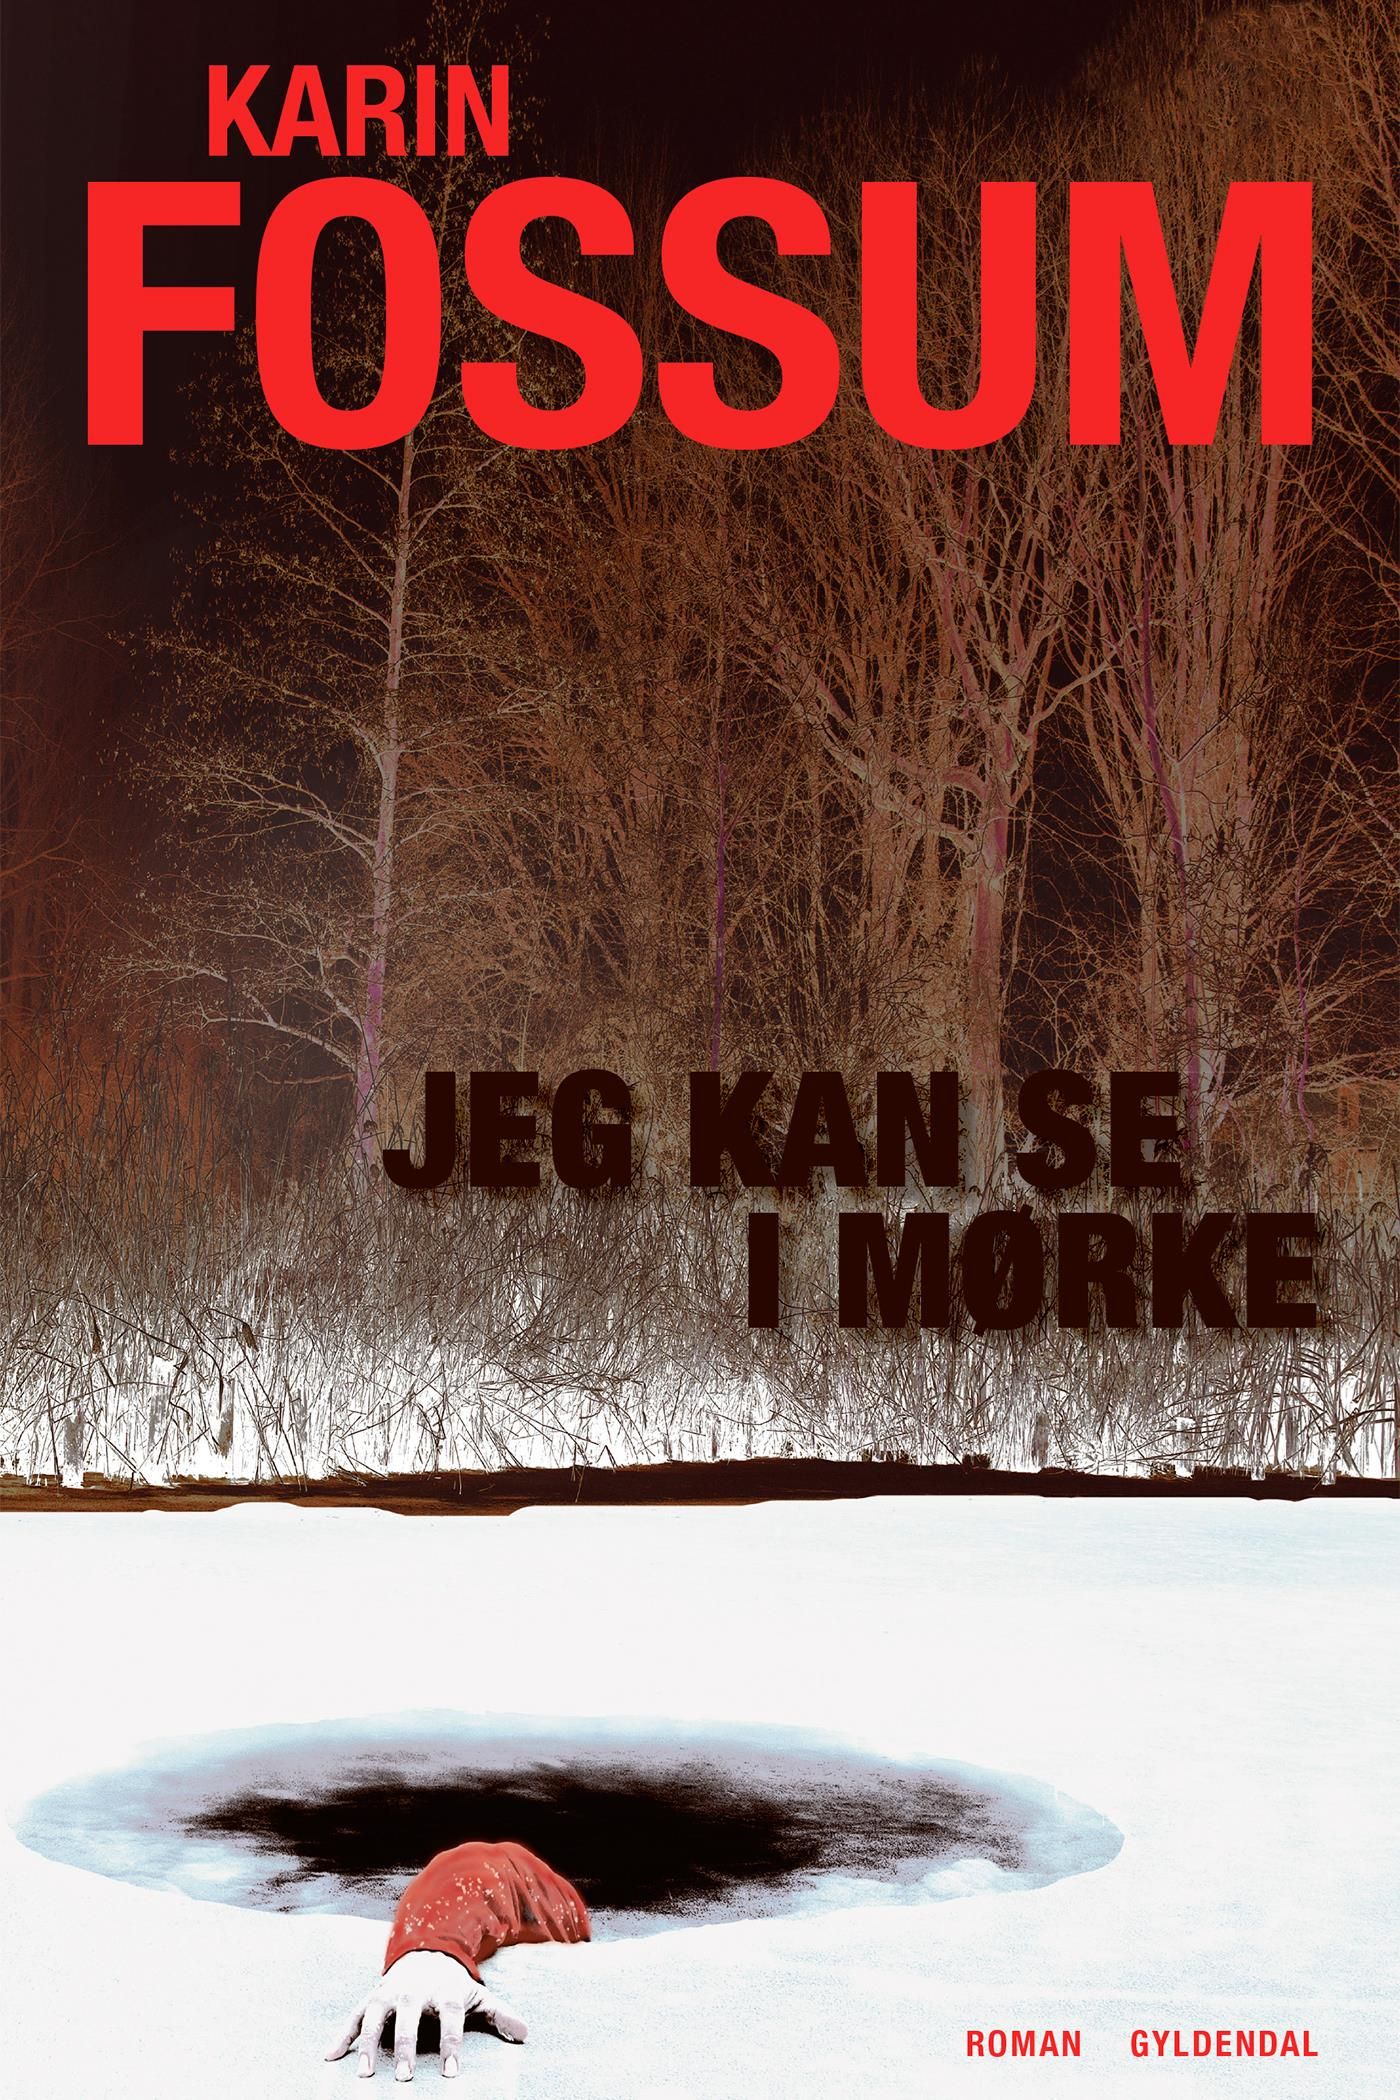 Jeg kan se i mørke, e-bok av Karin Fossum